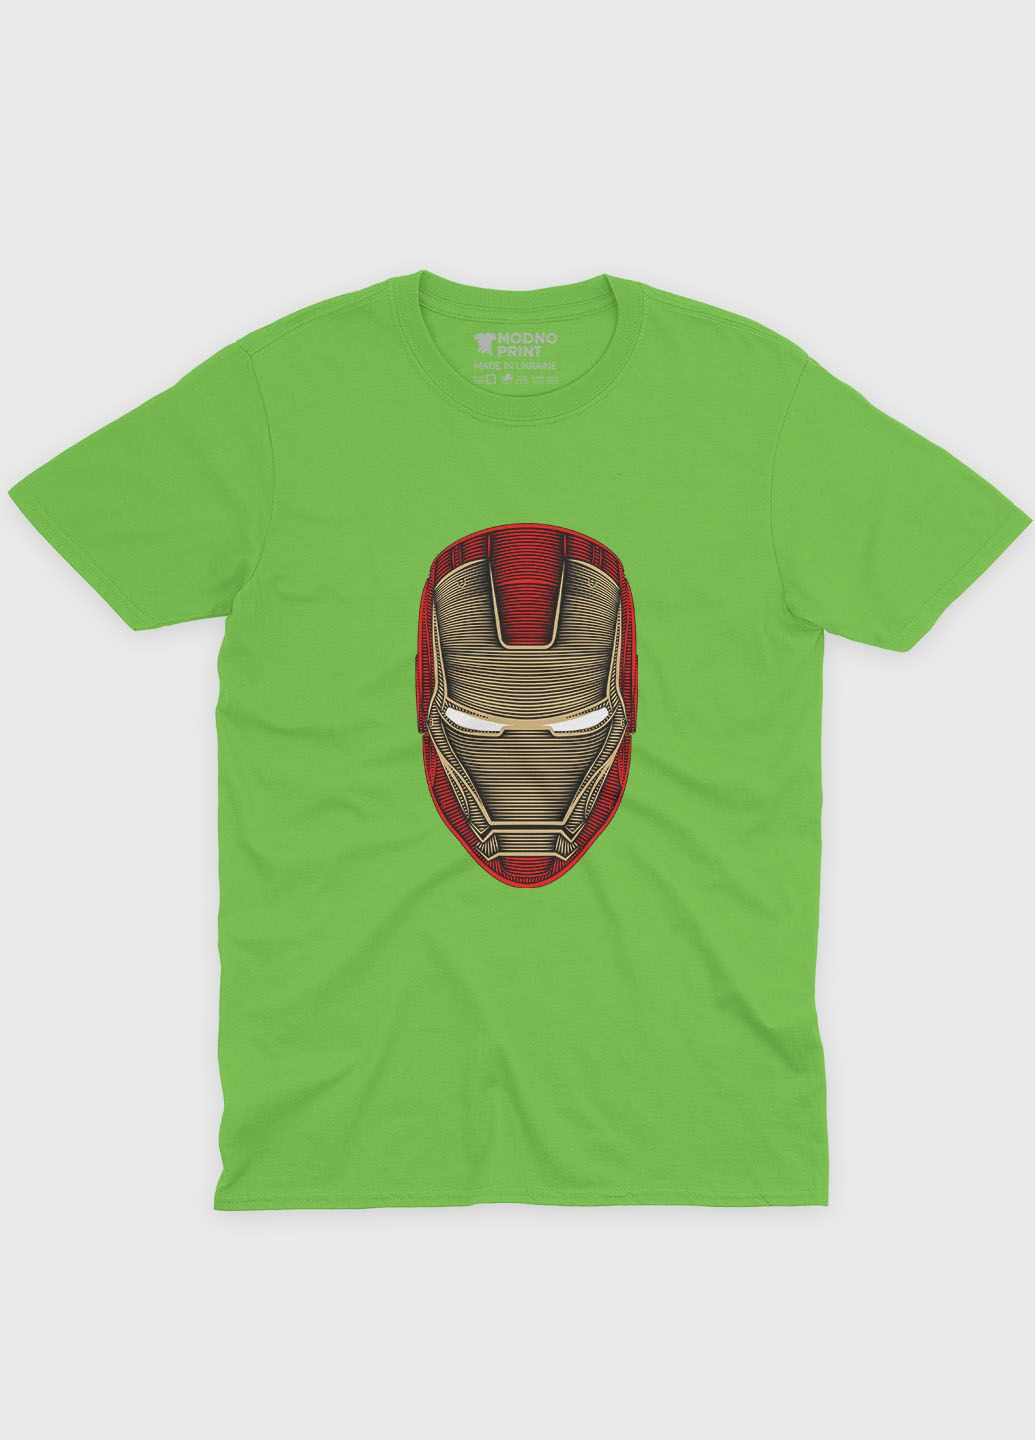 Салатовая демисезонная футболка для мальчика с принтом супергероя - железный человек (ts001-1-kiw-006-016-017-b) Modno